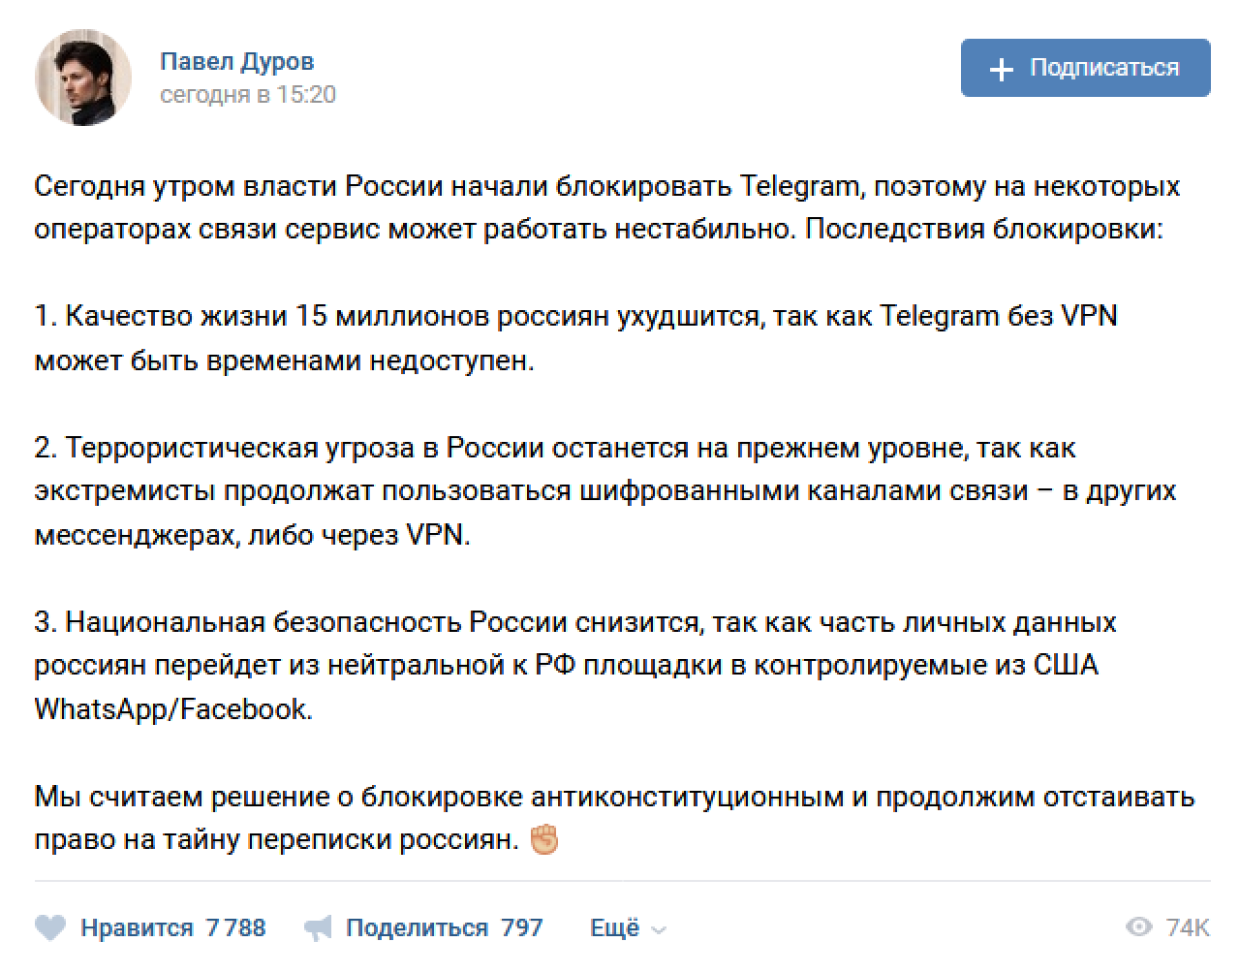 Дуров назвал три главных последствия блокировки Telegram в России